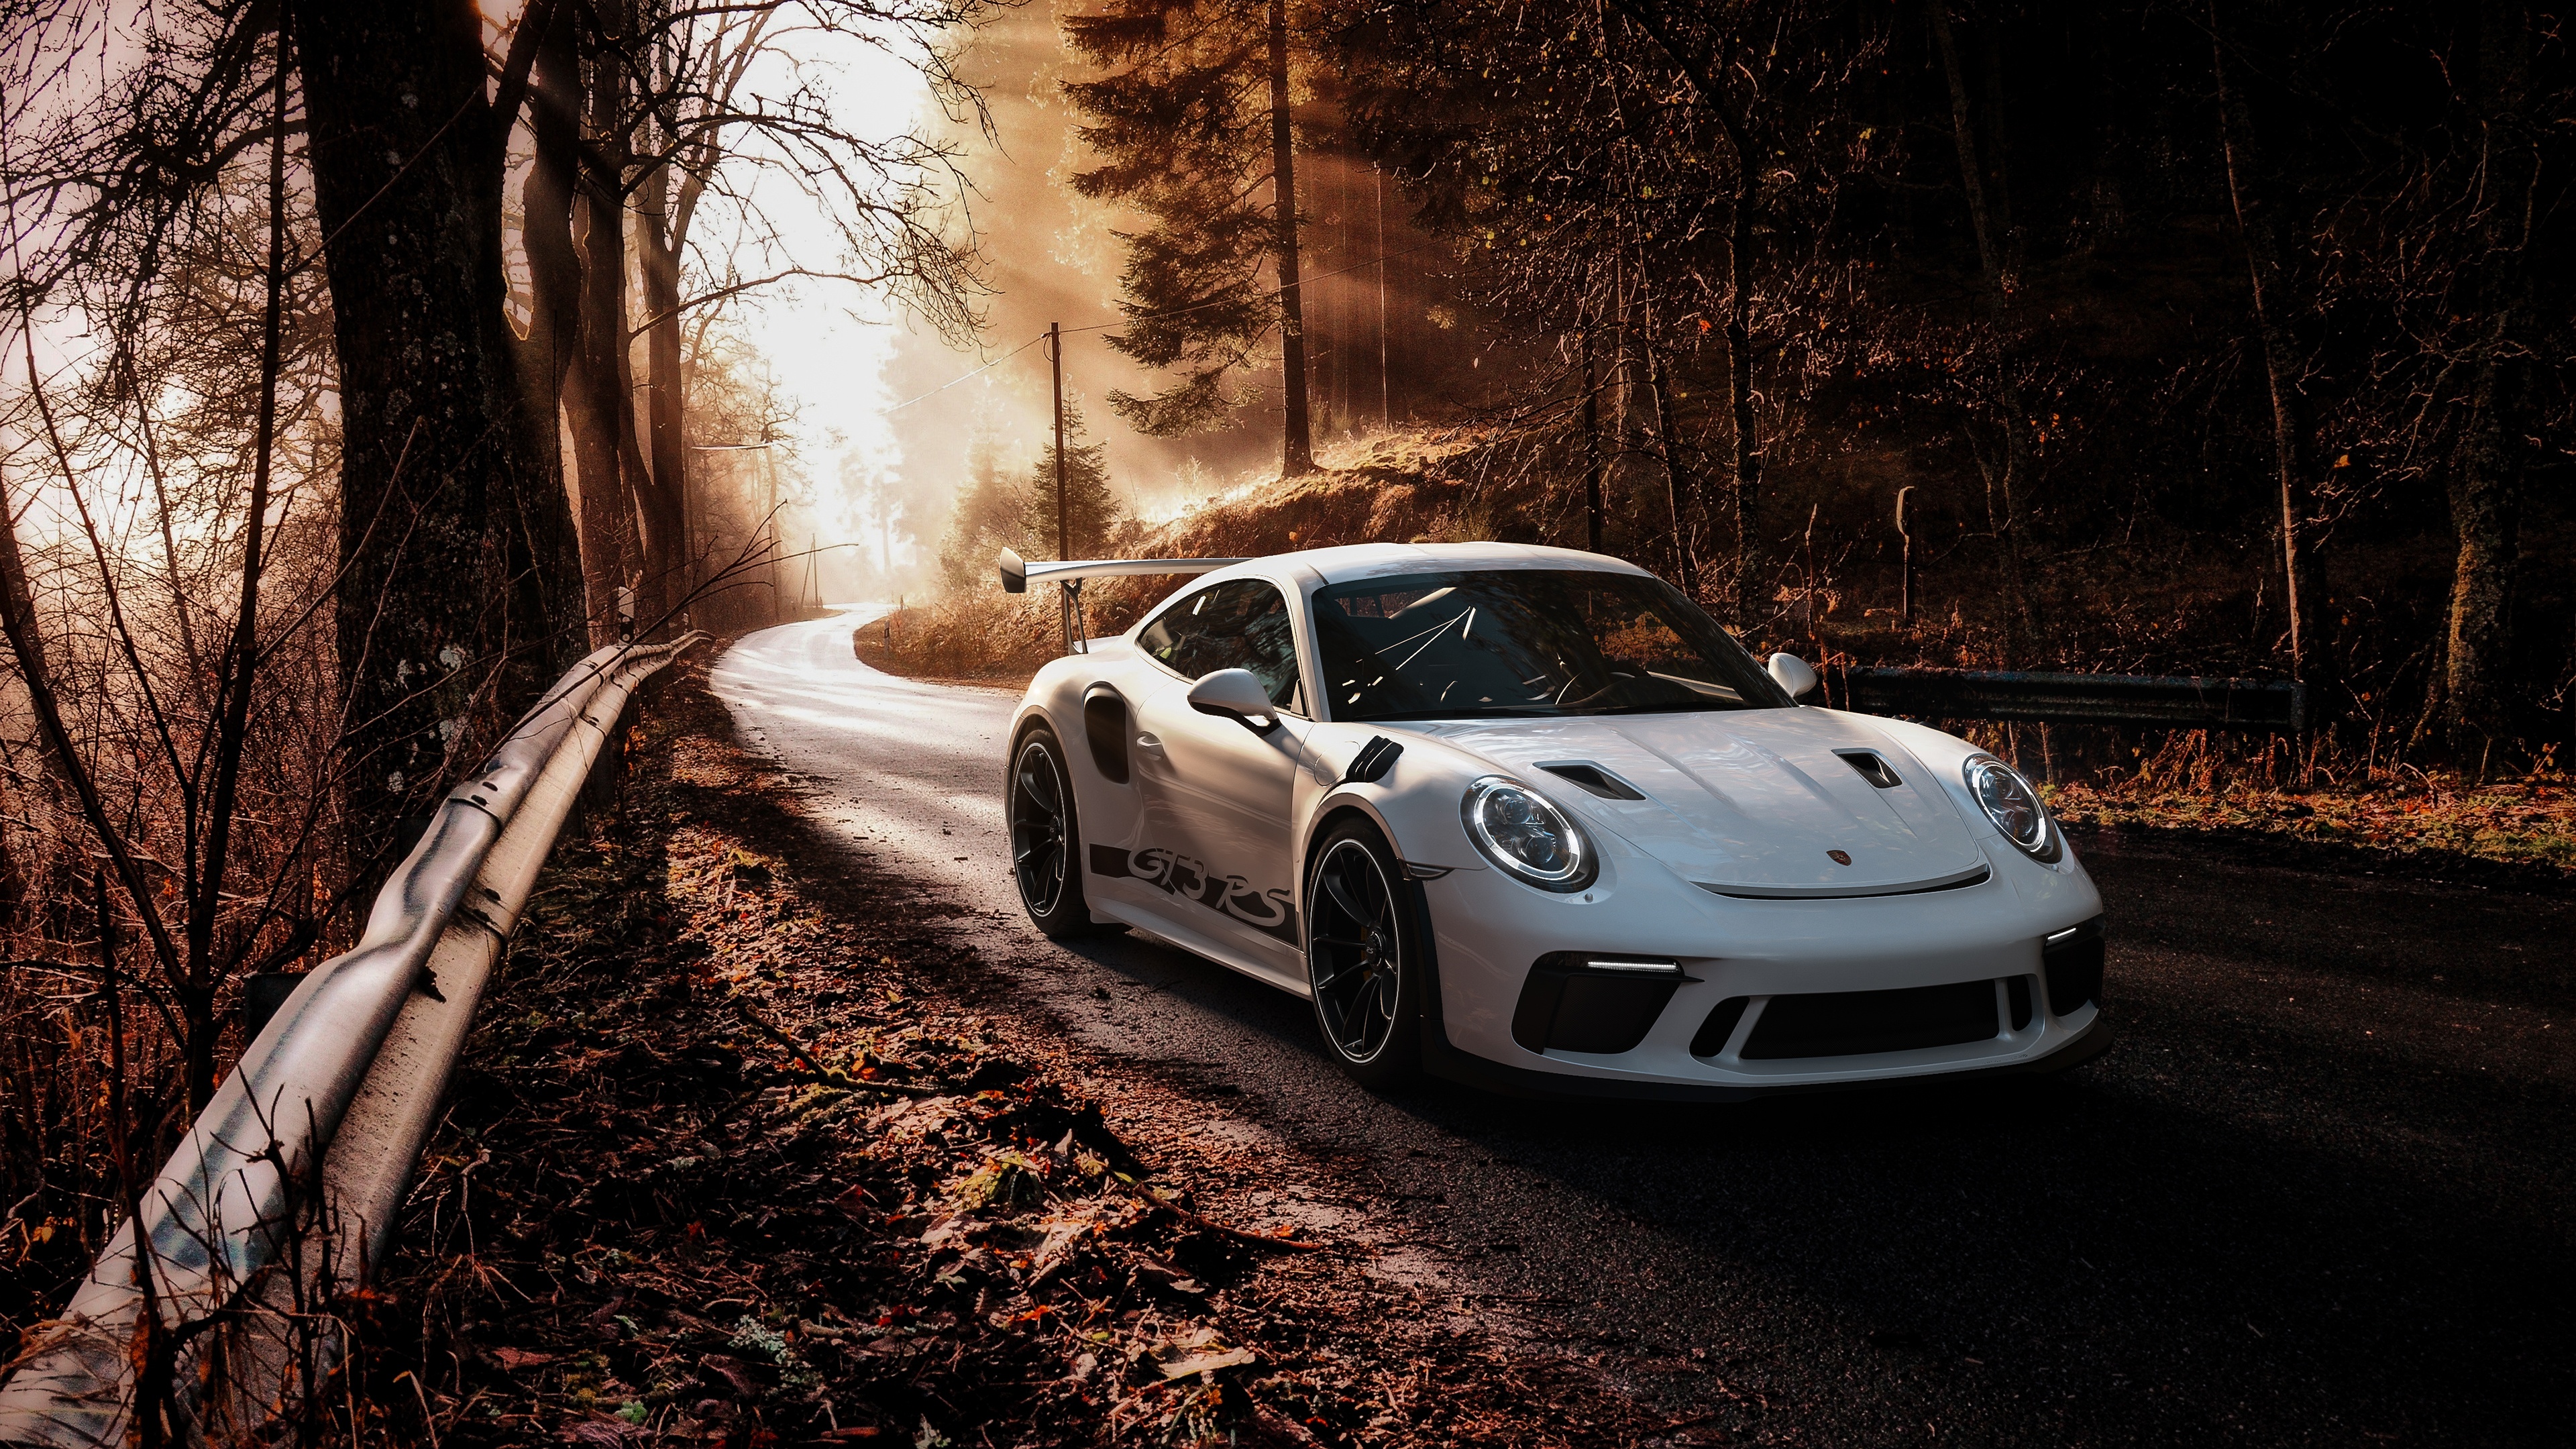 Descargar fondos de escritorio de Porsche 911 HD